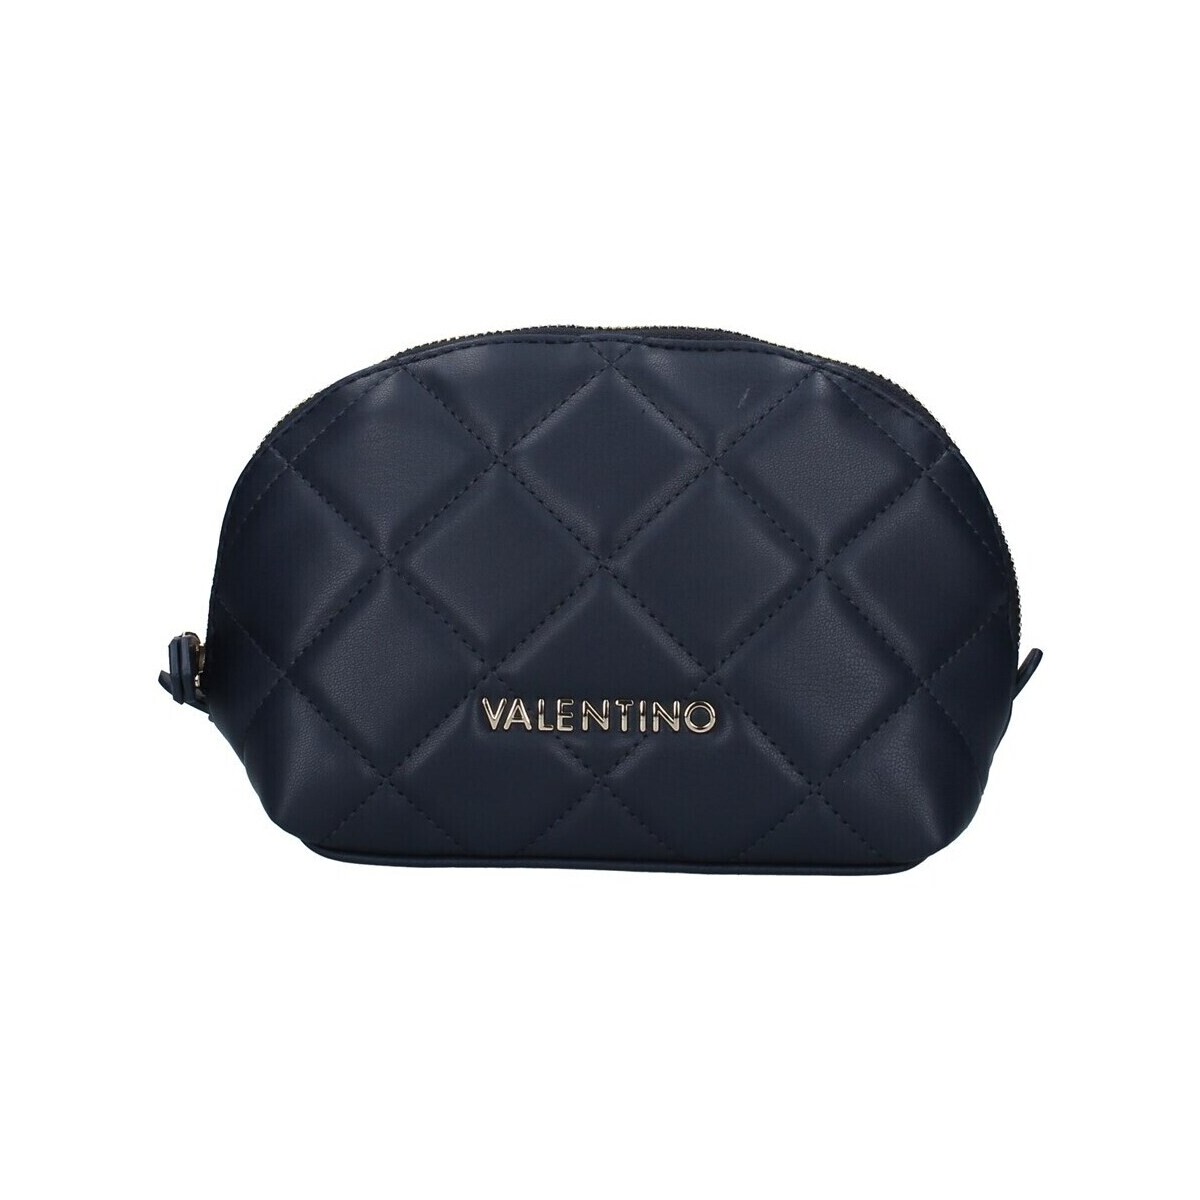 Tassen Tasjes / Handtasjes Valentino Bags VBE3KK512 Blauw